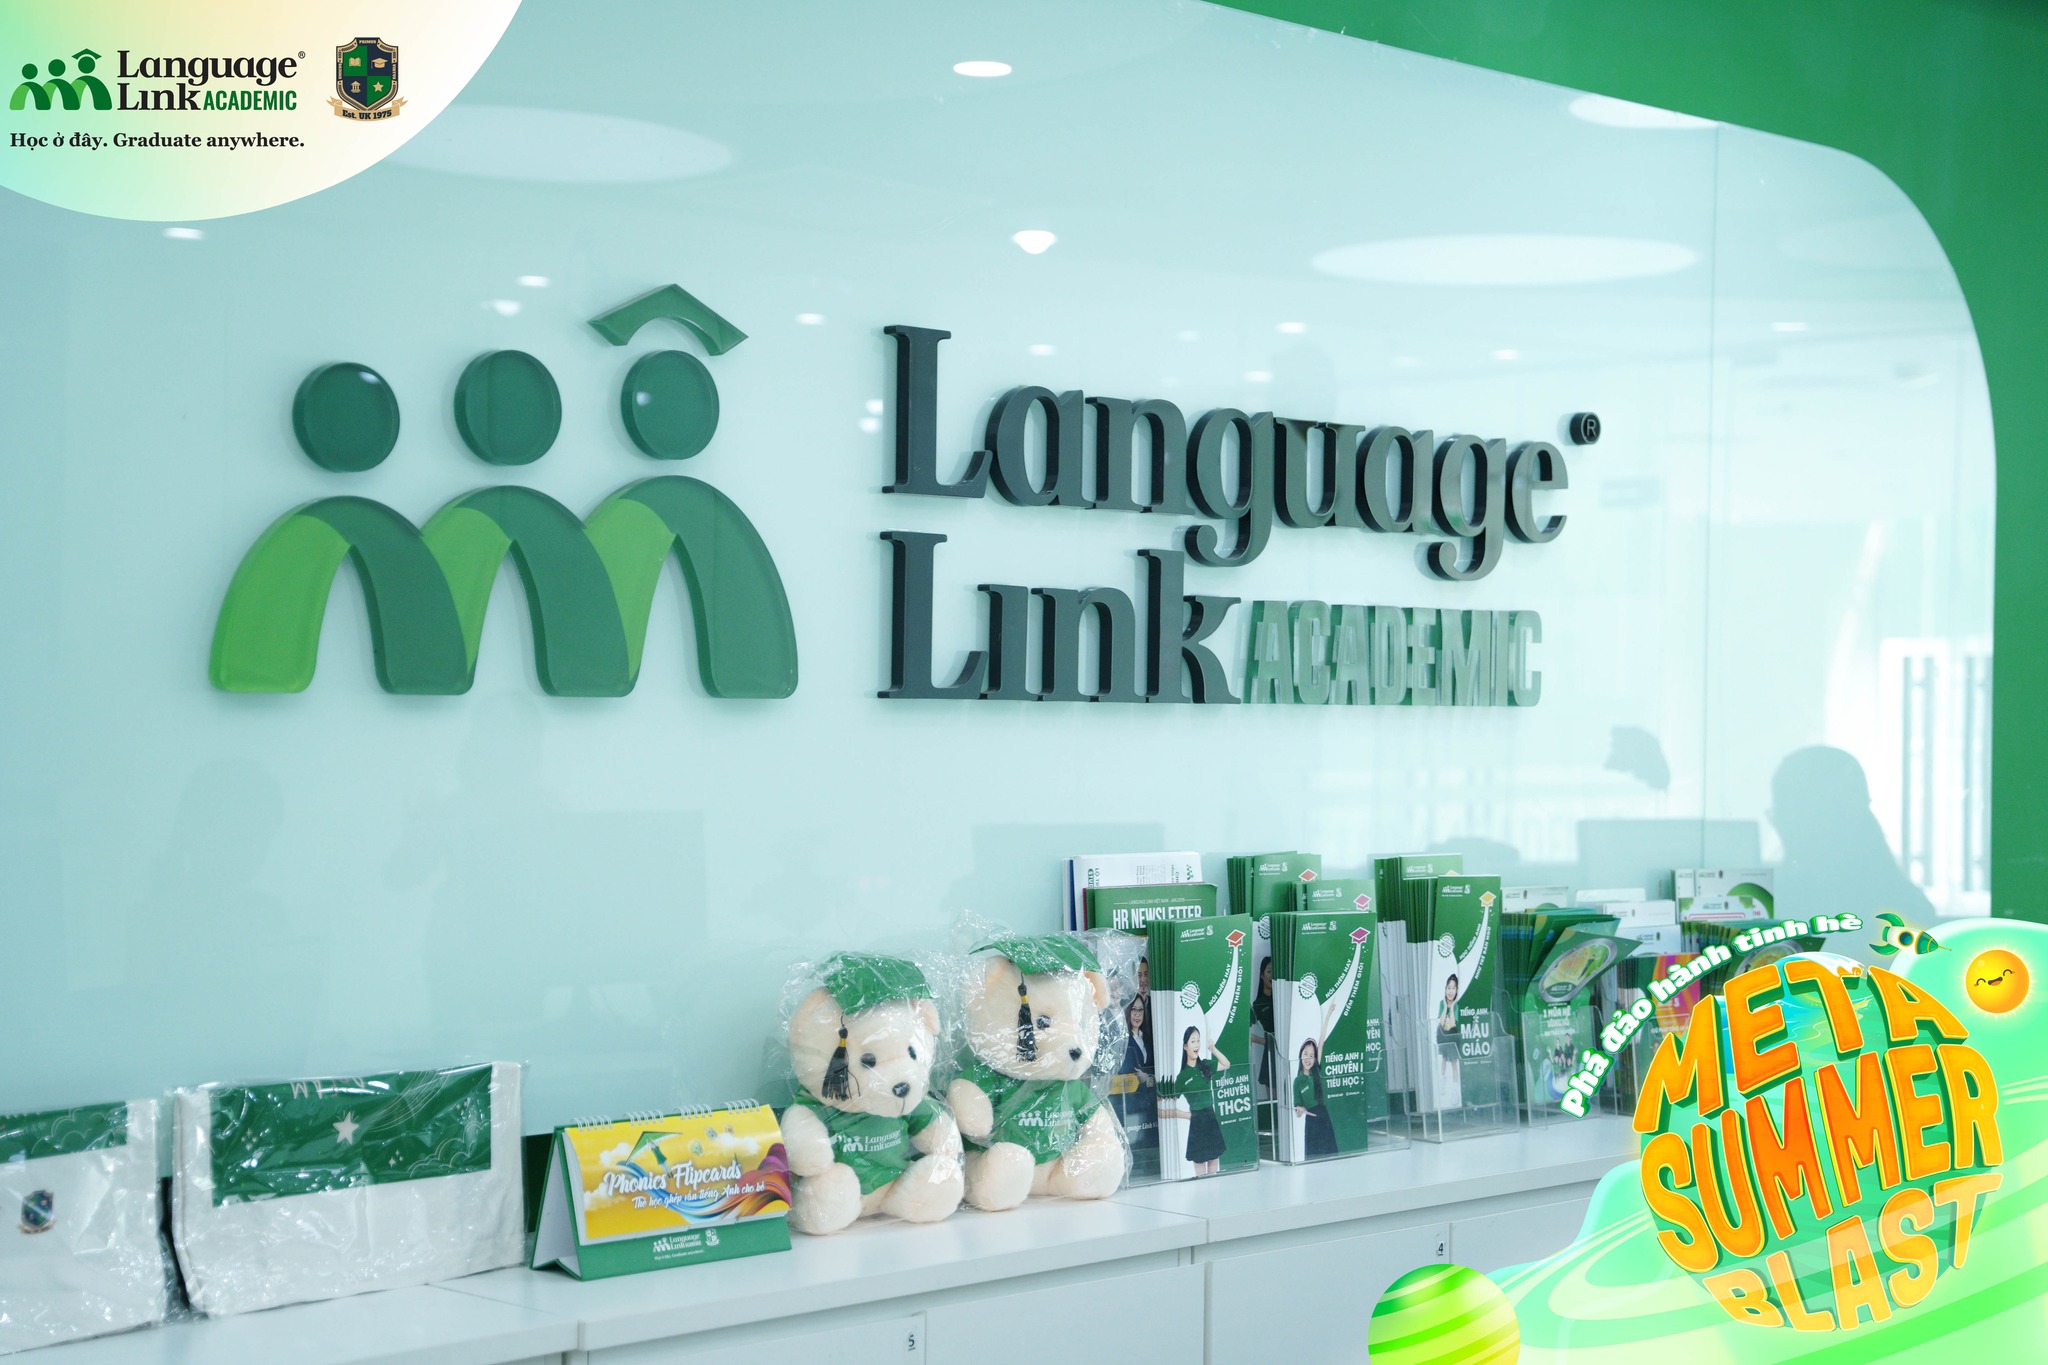 Khoá học tại Language Link Academic nổi bật nhất